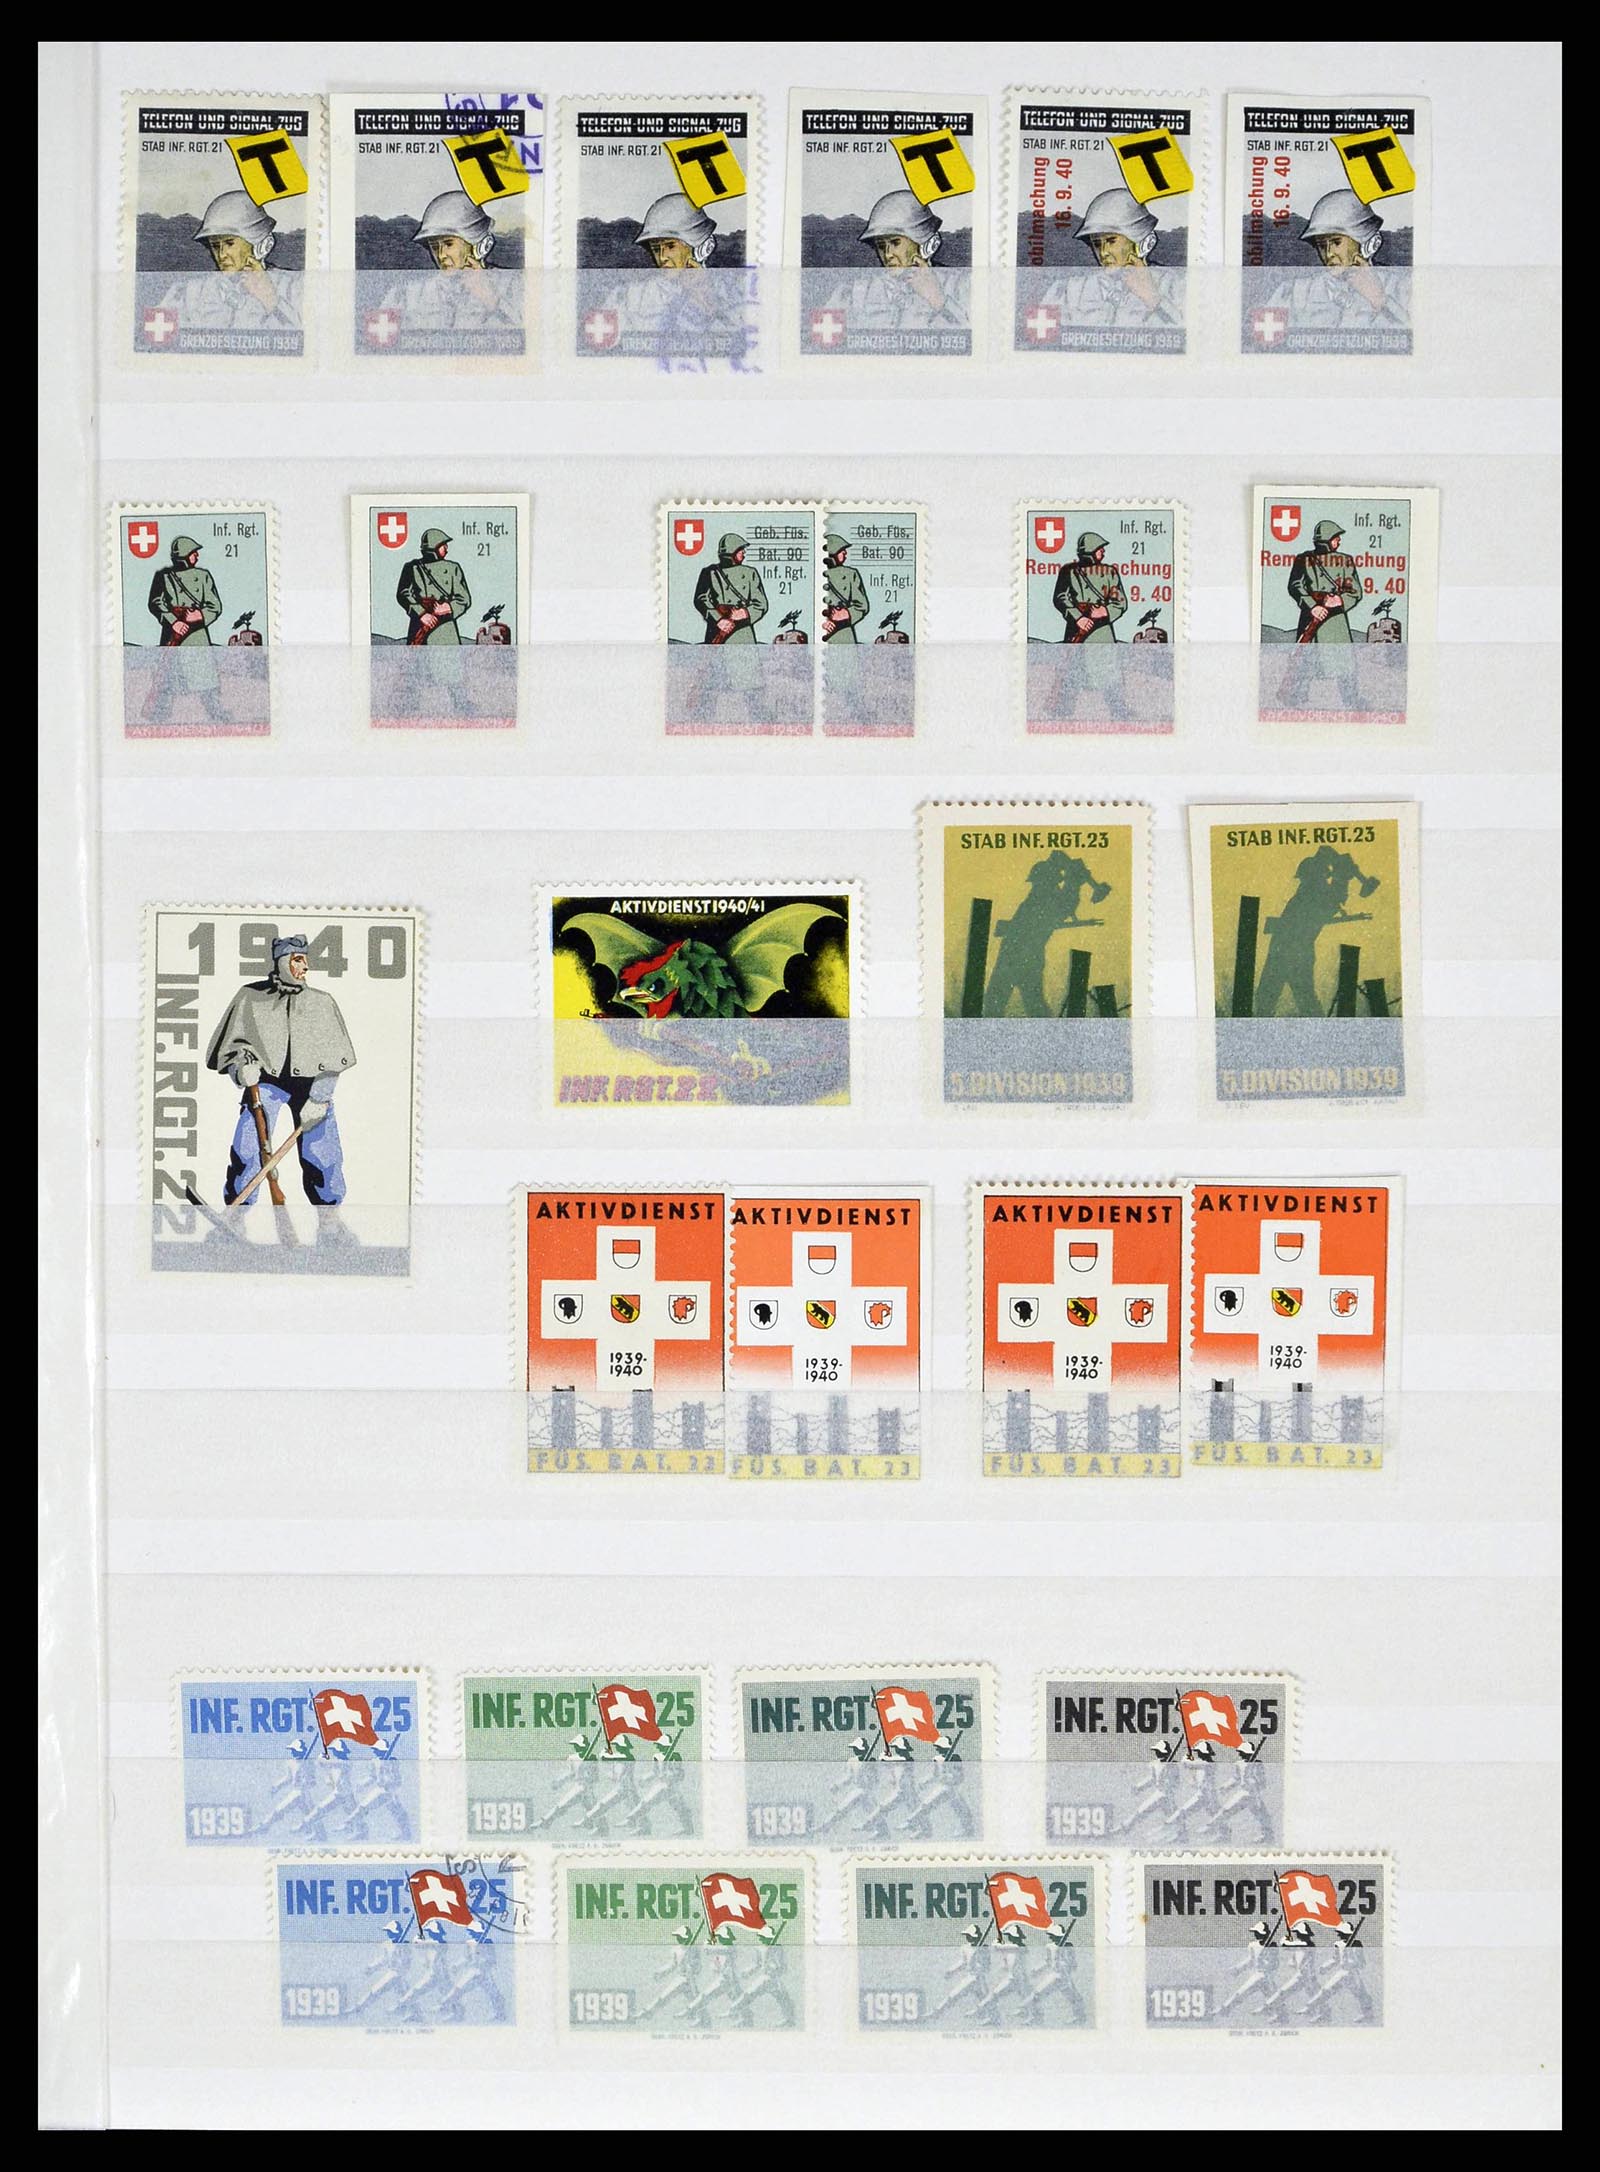 38695 0057 - Stamp collection 38695 Switzerland soldierstamps 1914-1945.